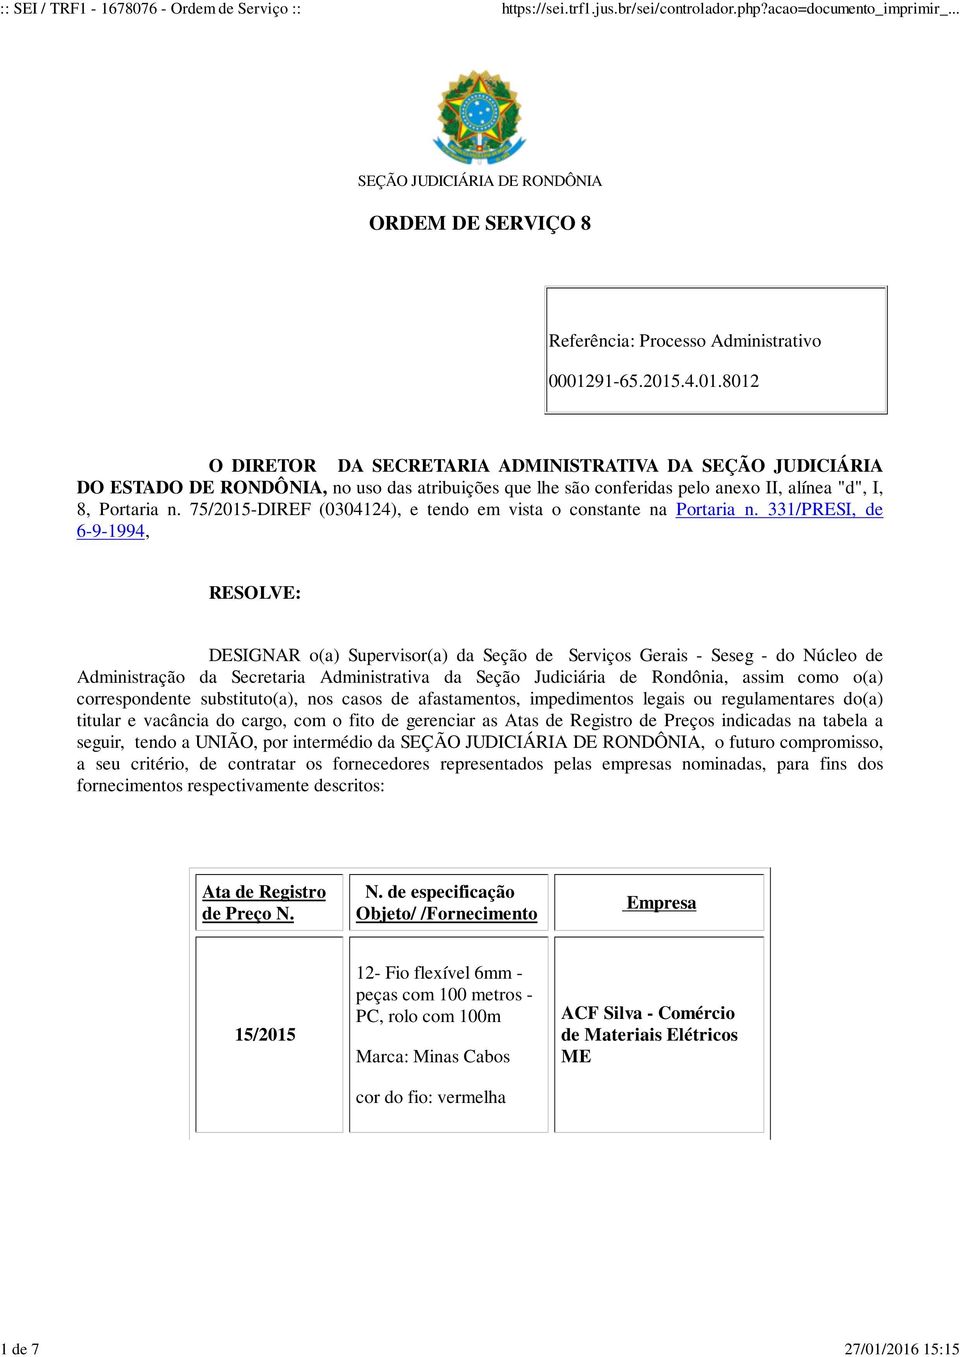 331/PRESI, de 6-9-1994, RESOLVE: DESIGNAR o(a) Supervisor(a) da Seção de Serviços Gerais - Seseg - do Núcleo de Administração da Secretaria Administrativa da Seção Judiciária de Rondônia, assim como